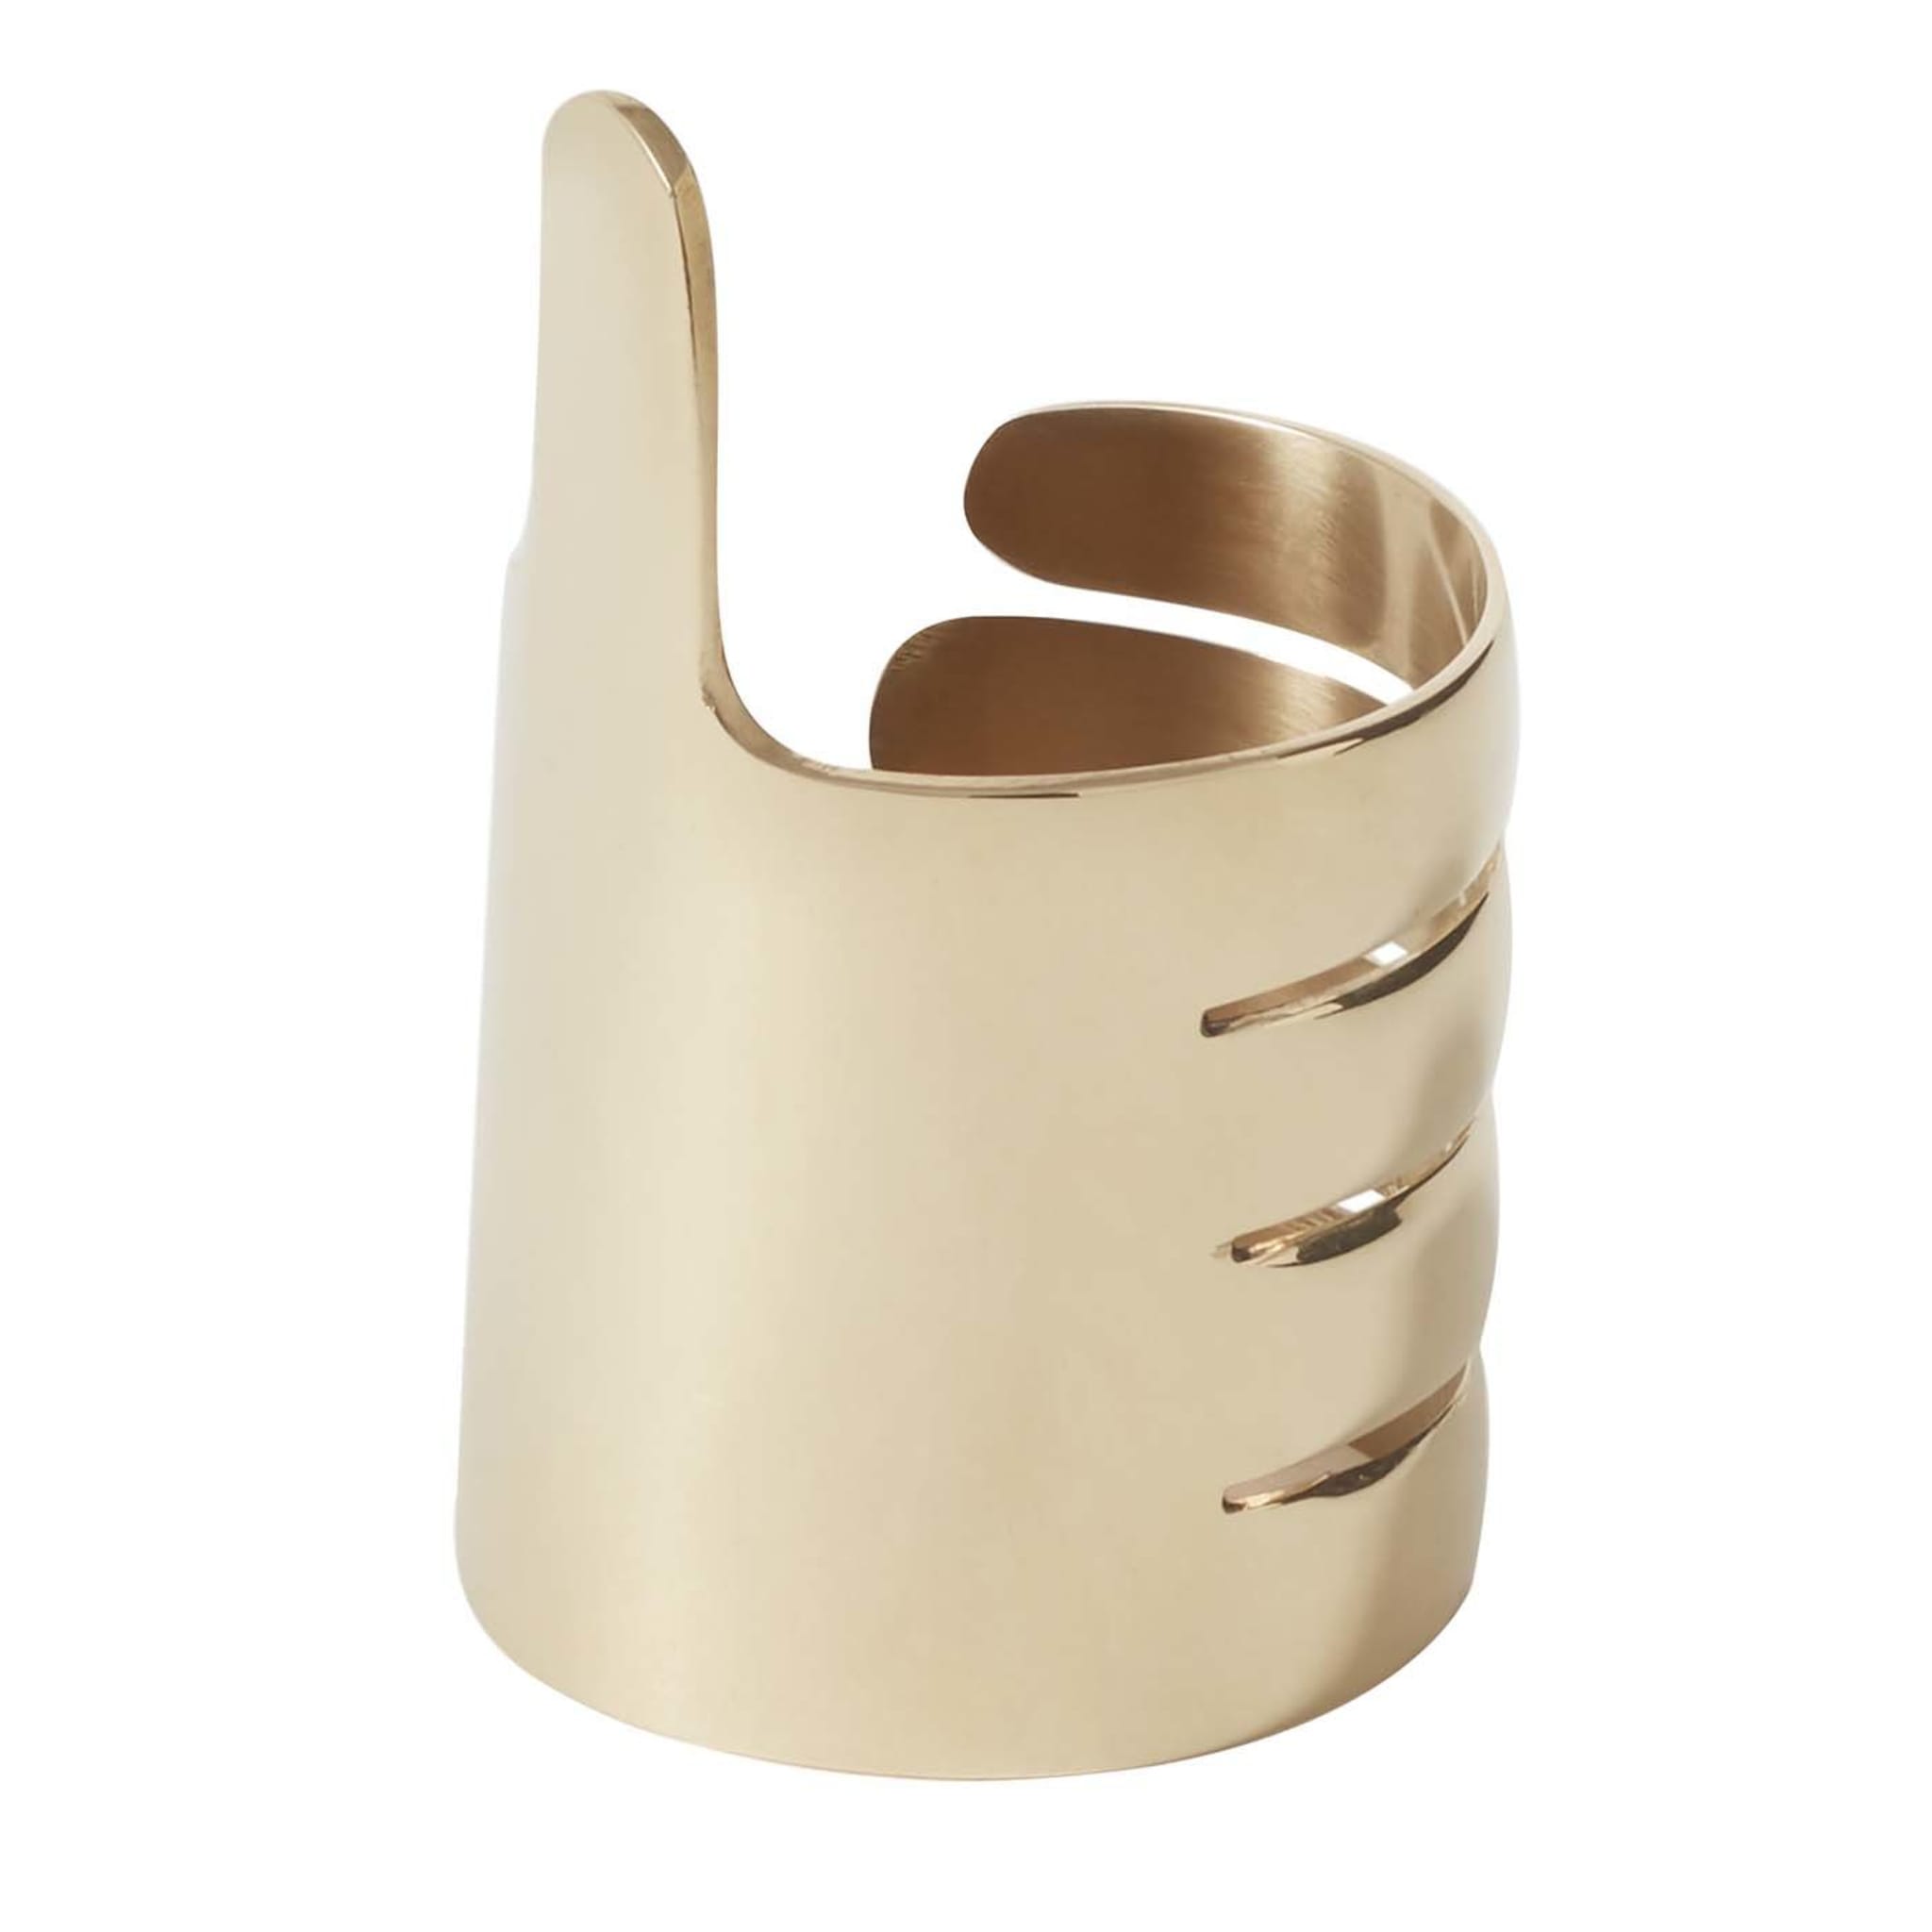 Set of 2 Brass Handi Napkin Rings by Jaime Hayon - Main view